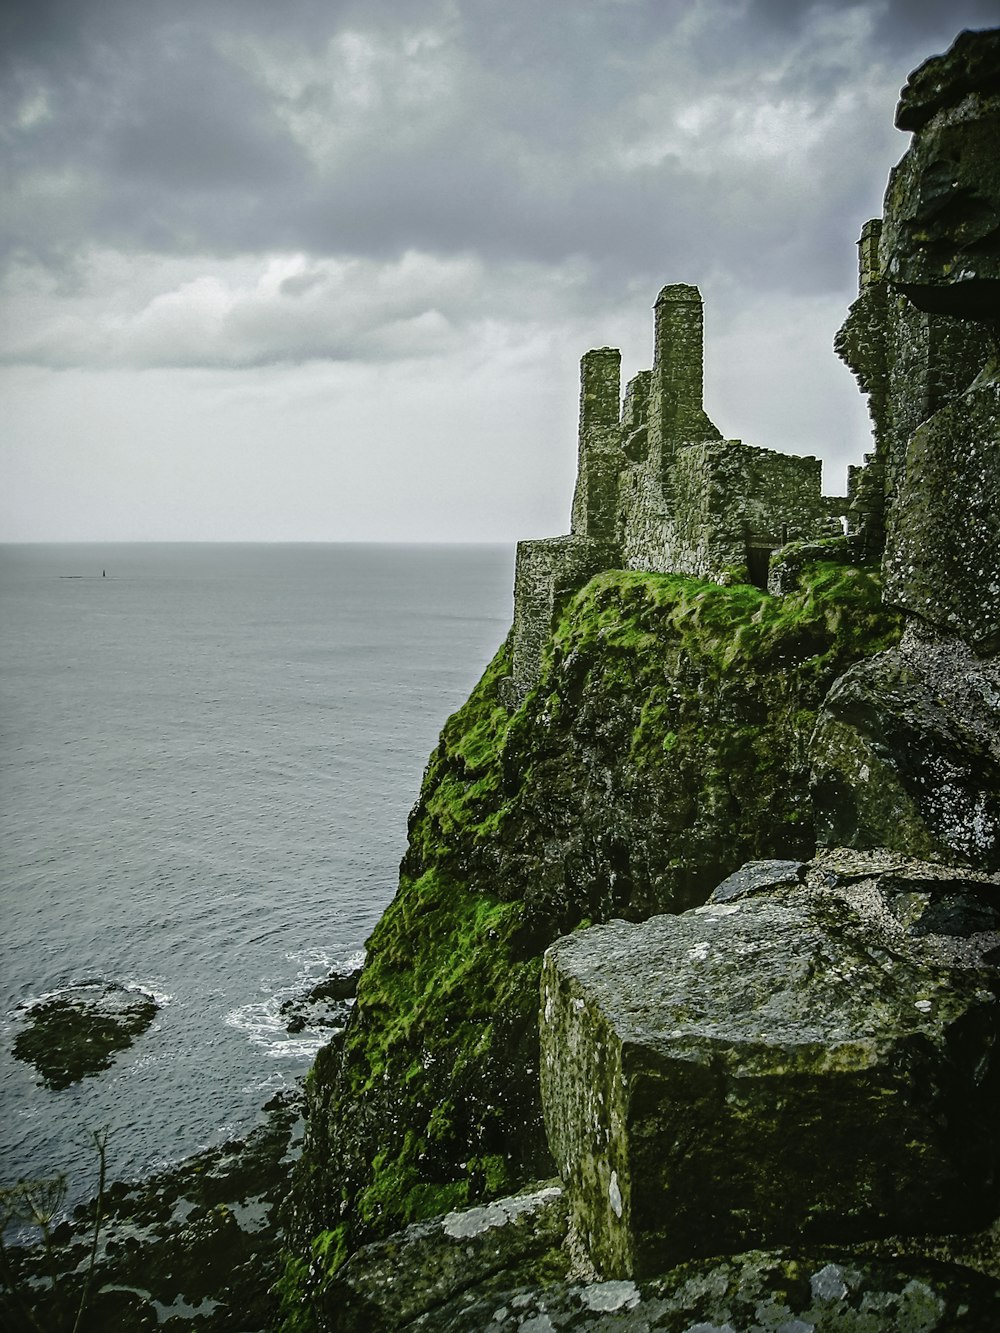 Castillo de hormigón gris en el acantilado junto al mar bajo nubes blancas durante el día